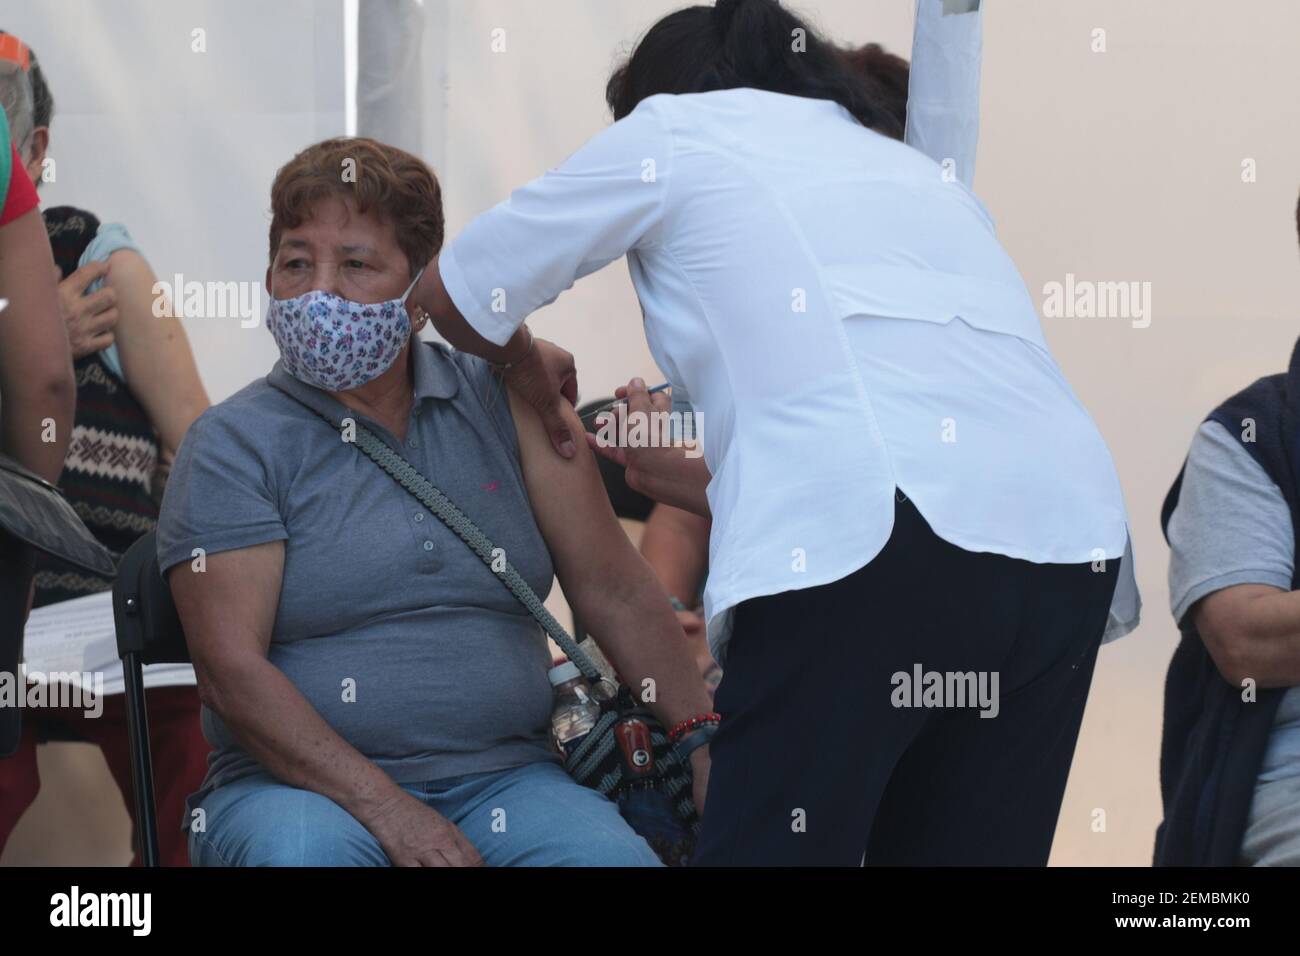 Nicht exklusiv: MEXIKO-STADT, MEXIKO - FEBRUAR 24: Eine Person trägt Gesichtsmaske, während eine Dosis von Sinovac-Impfstoff, um ältere Menschen gegen Agains zu immunisieren Stockfoto